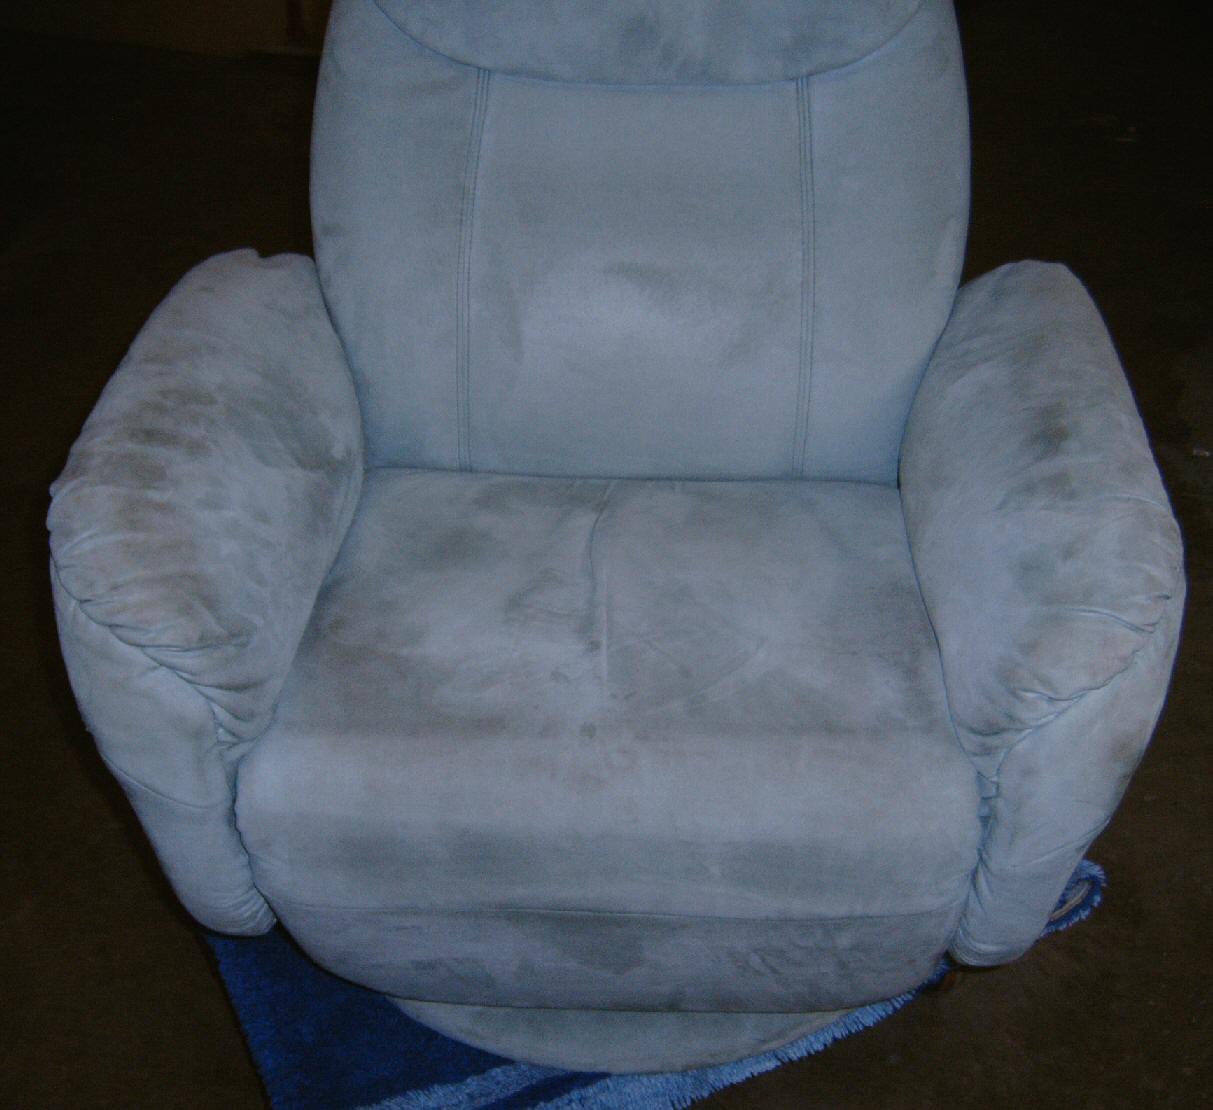 Polsterreinigung vorher: schmutziger Sessel frontal